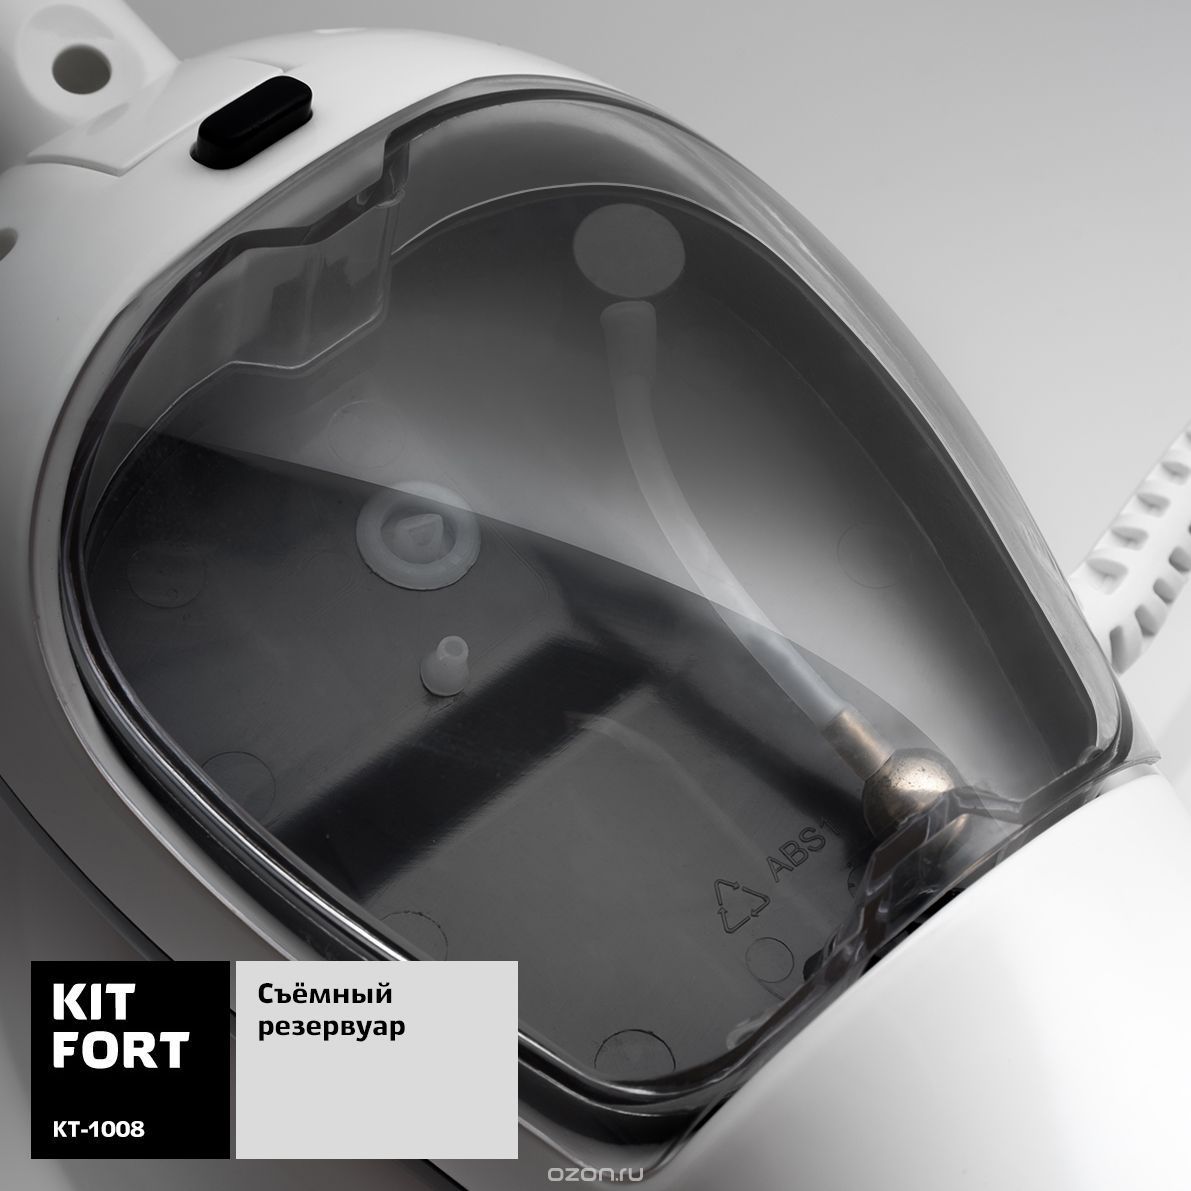  Kitfort -1008, White Gray